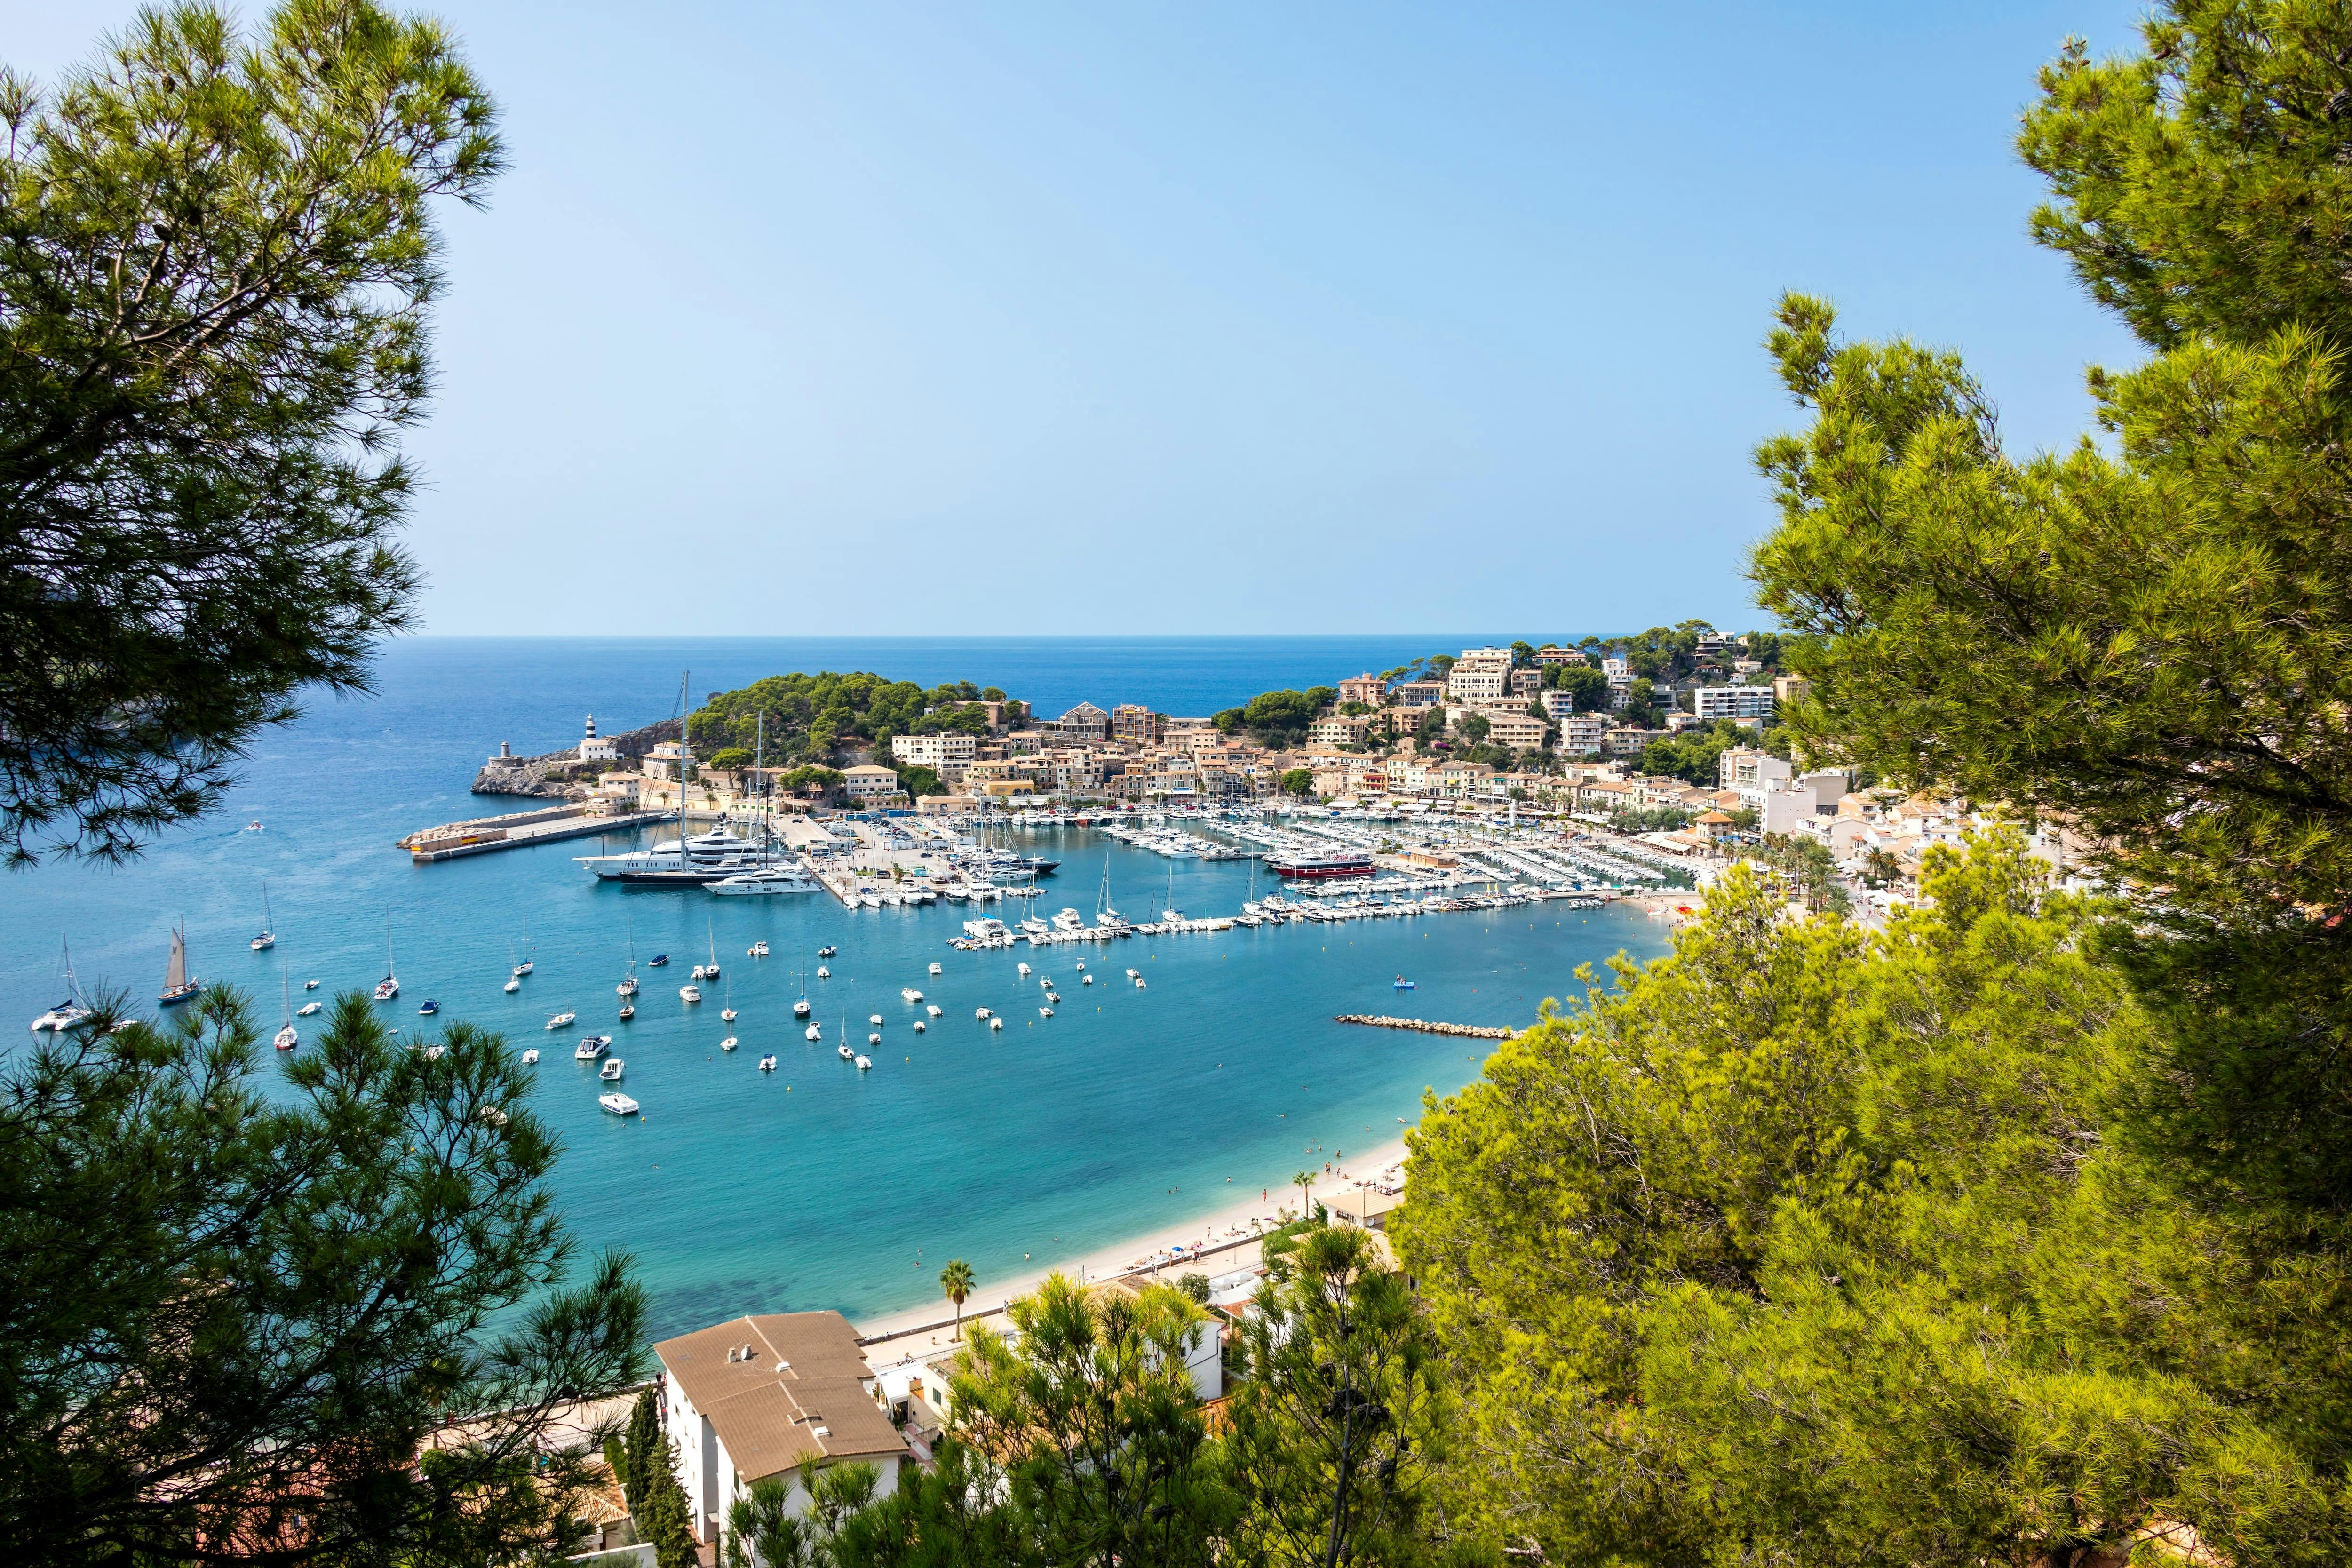 Full day Majorca Tour with Port de Soller and Sa Calobra